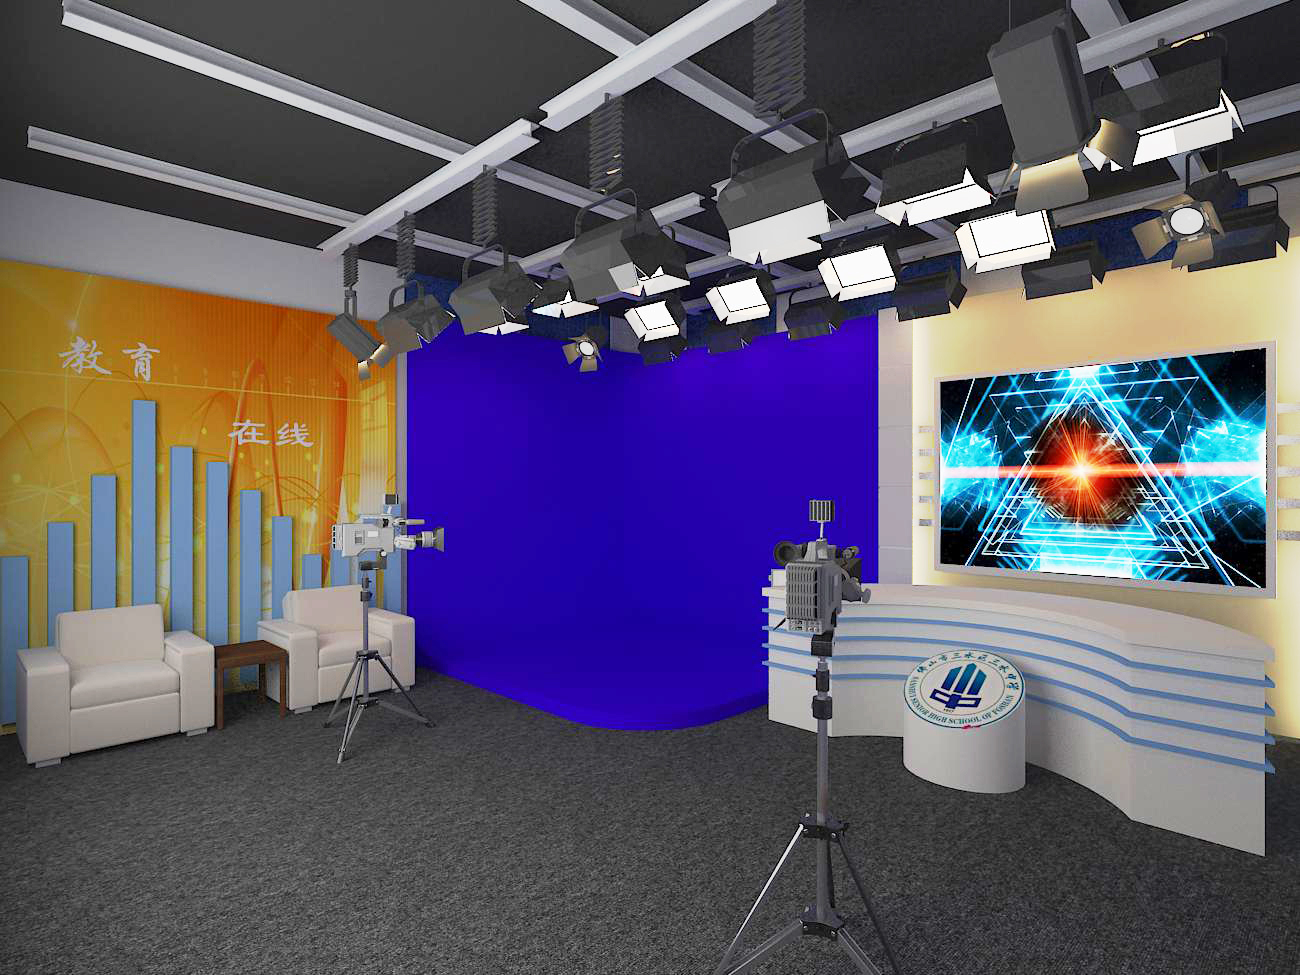 星河GVS-UHD4000真三维虚拟演播室系统 线上发布会直播场景施工搭建